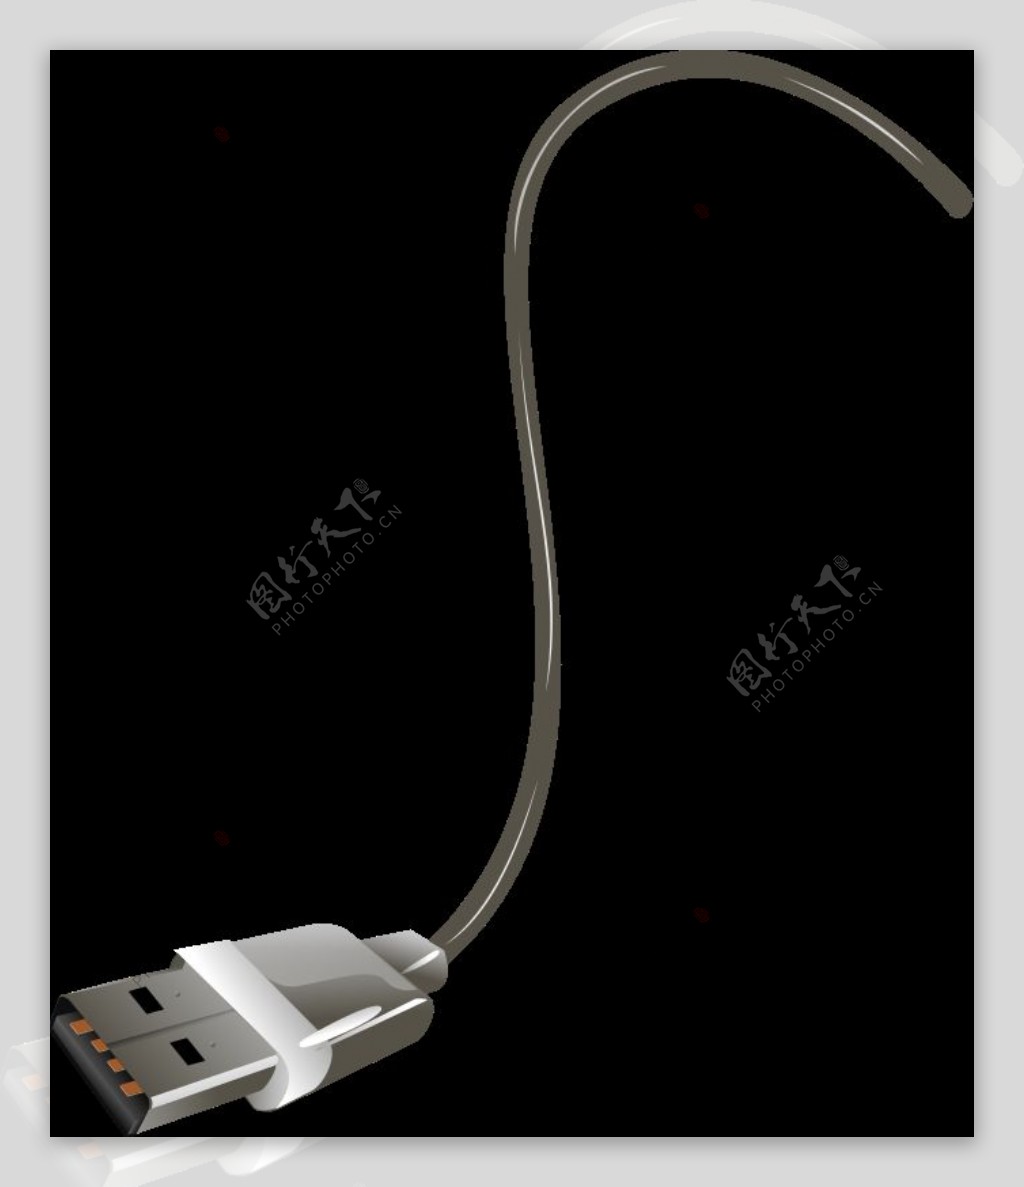 USB电缆混音